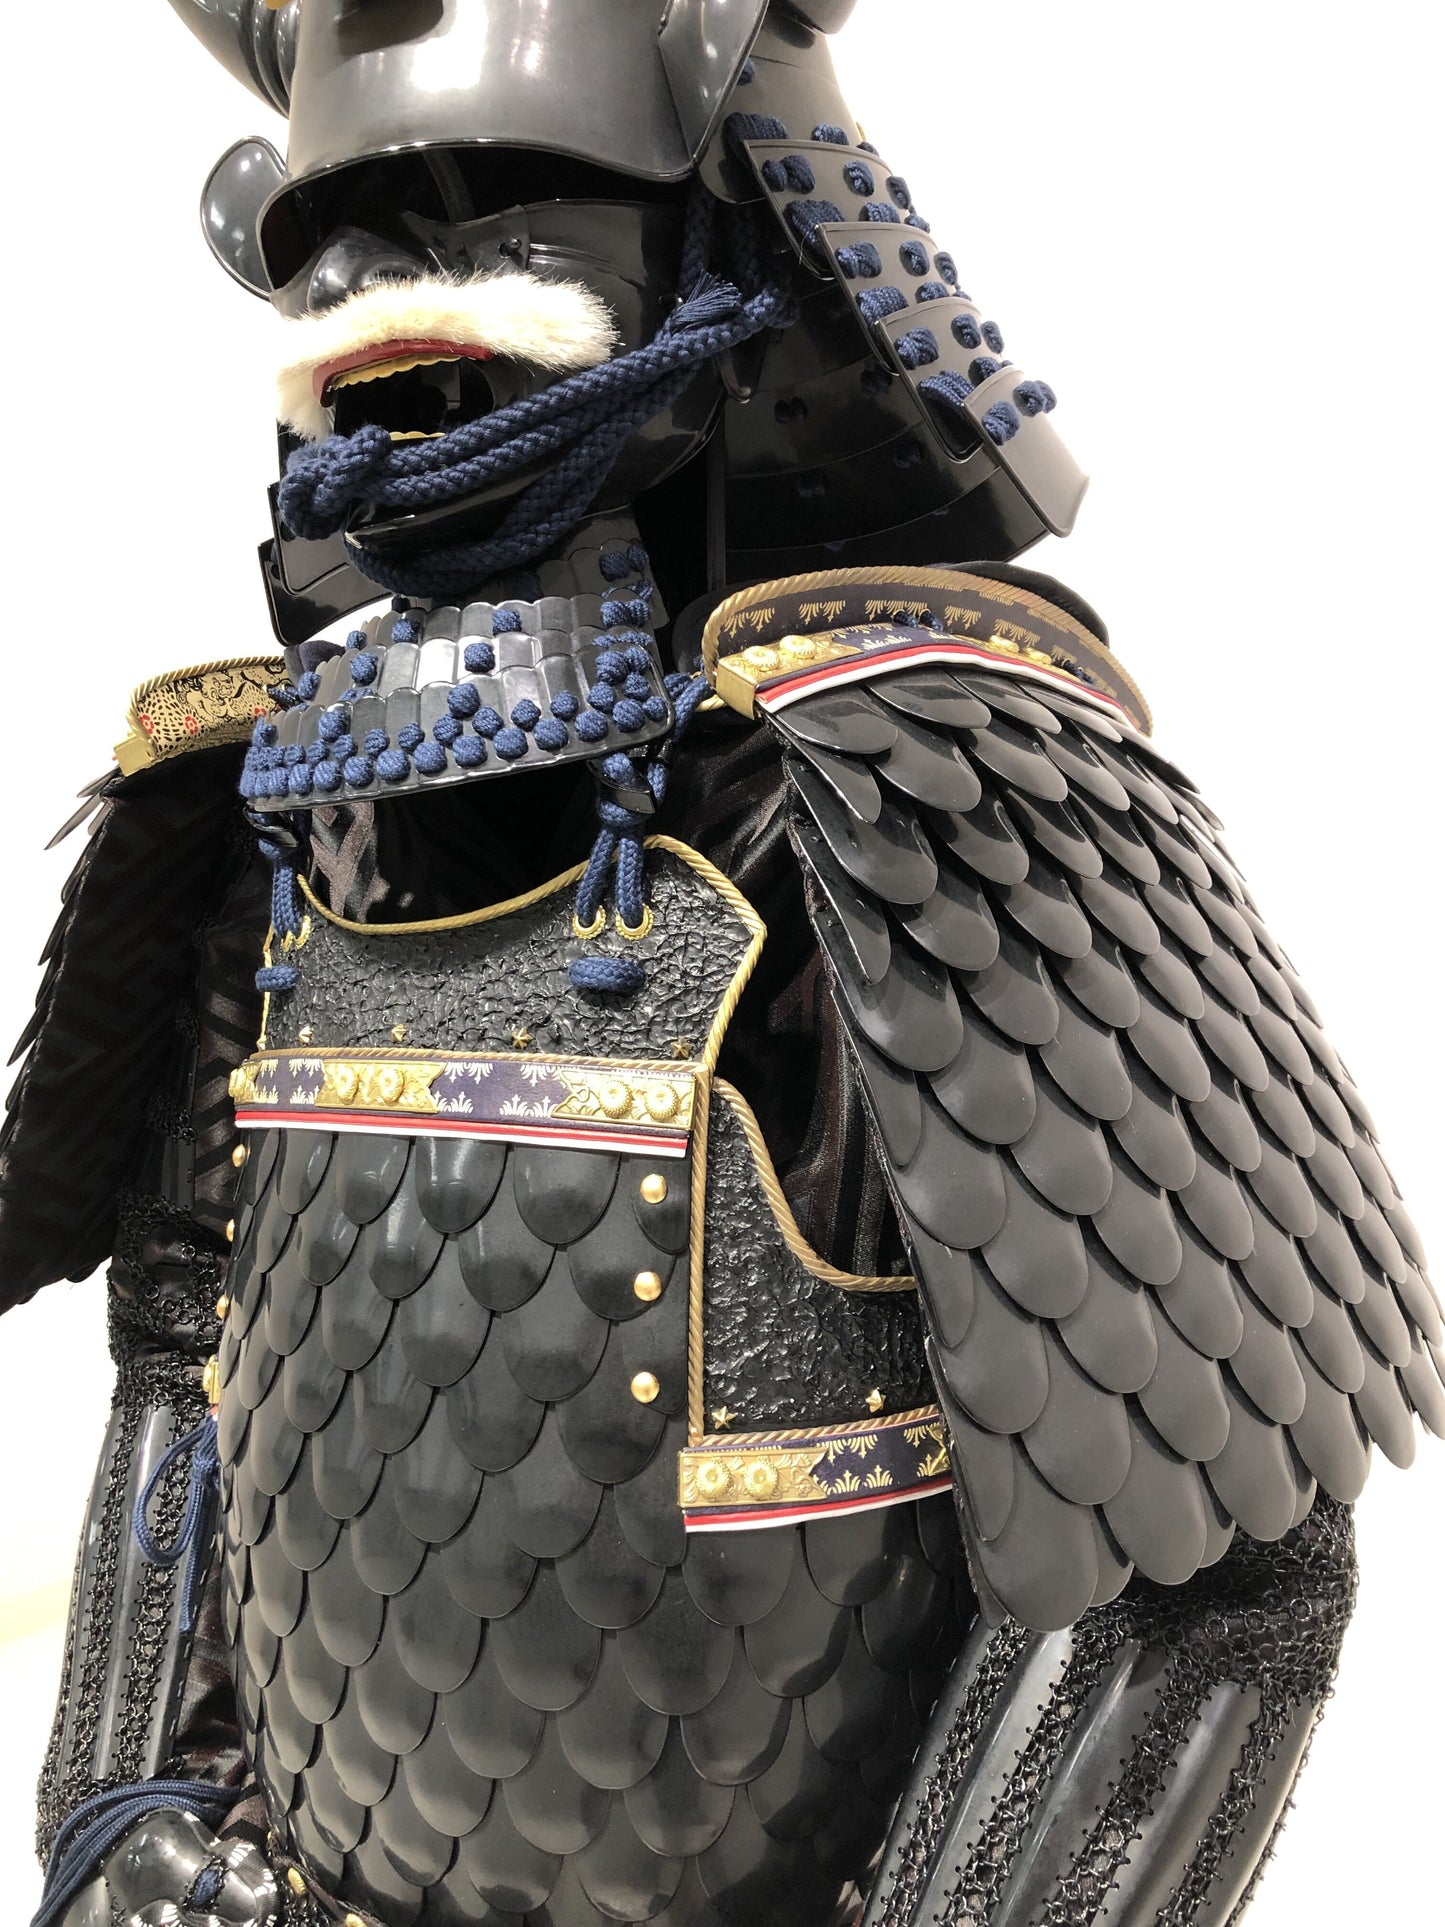 【O-012】Uroko(Scale) Armor